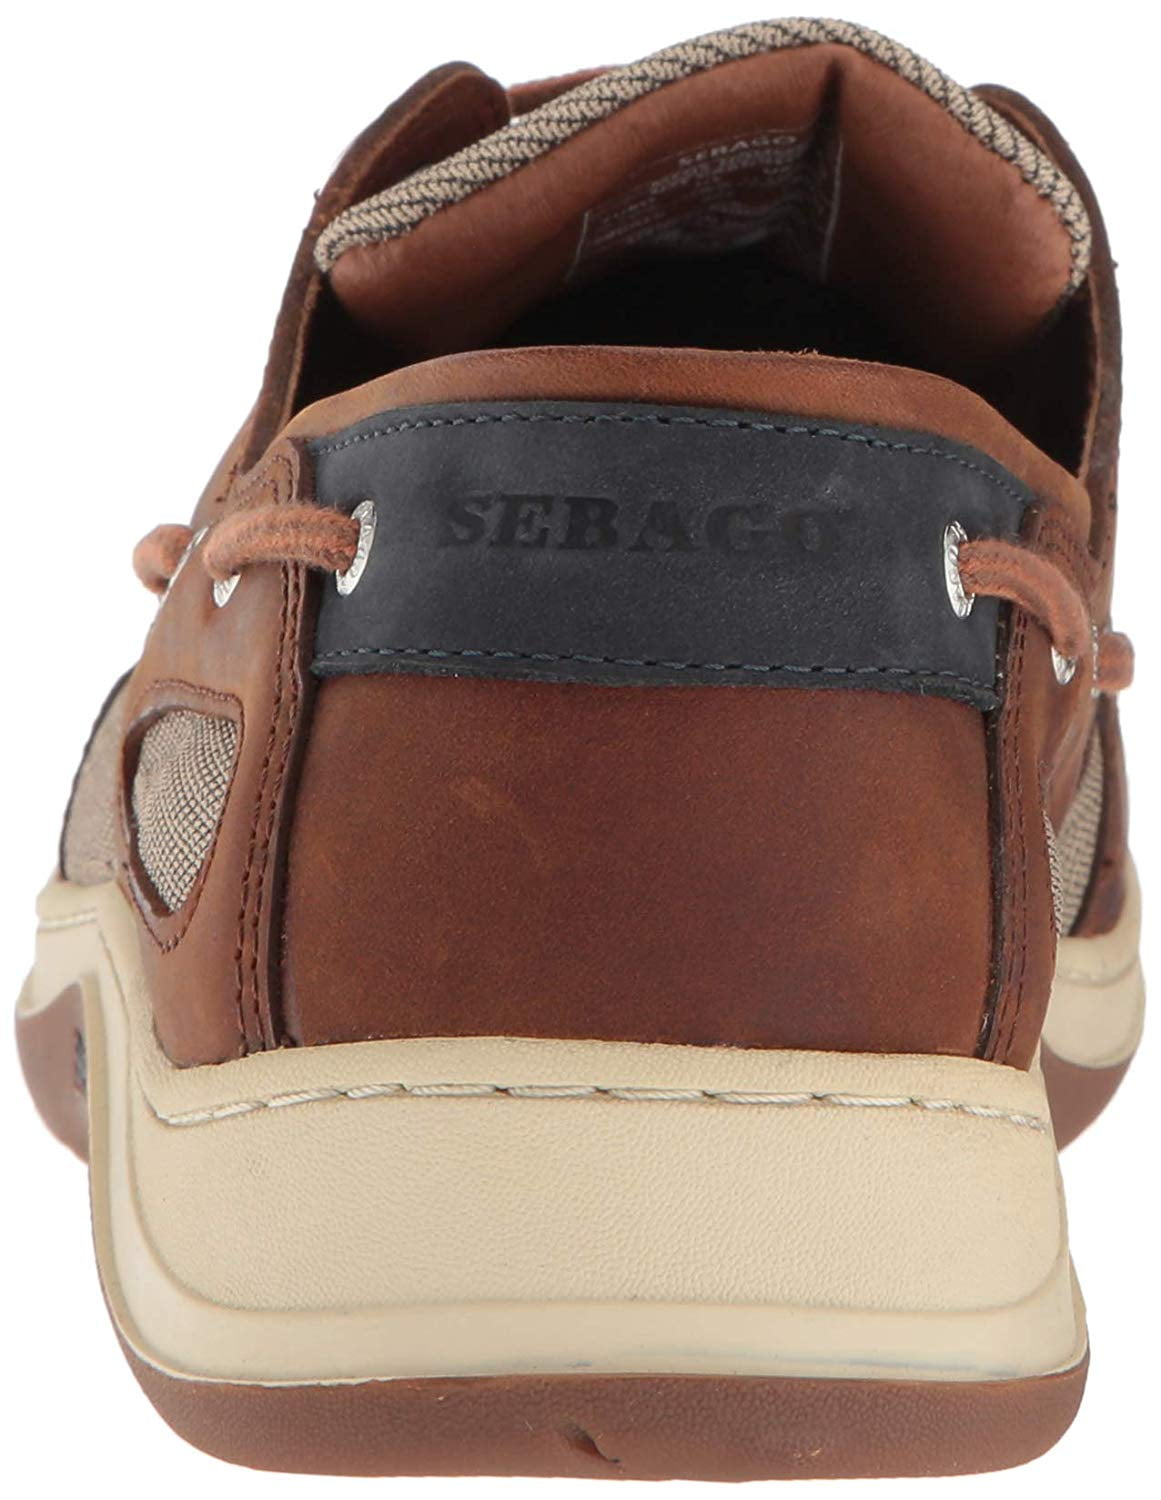 Men's Sebago Clovehitch Brown Cinnamon Leather Lace Up Deck Shoes